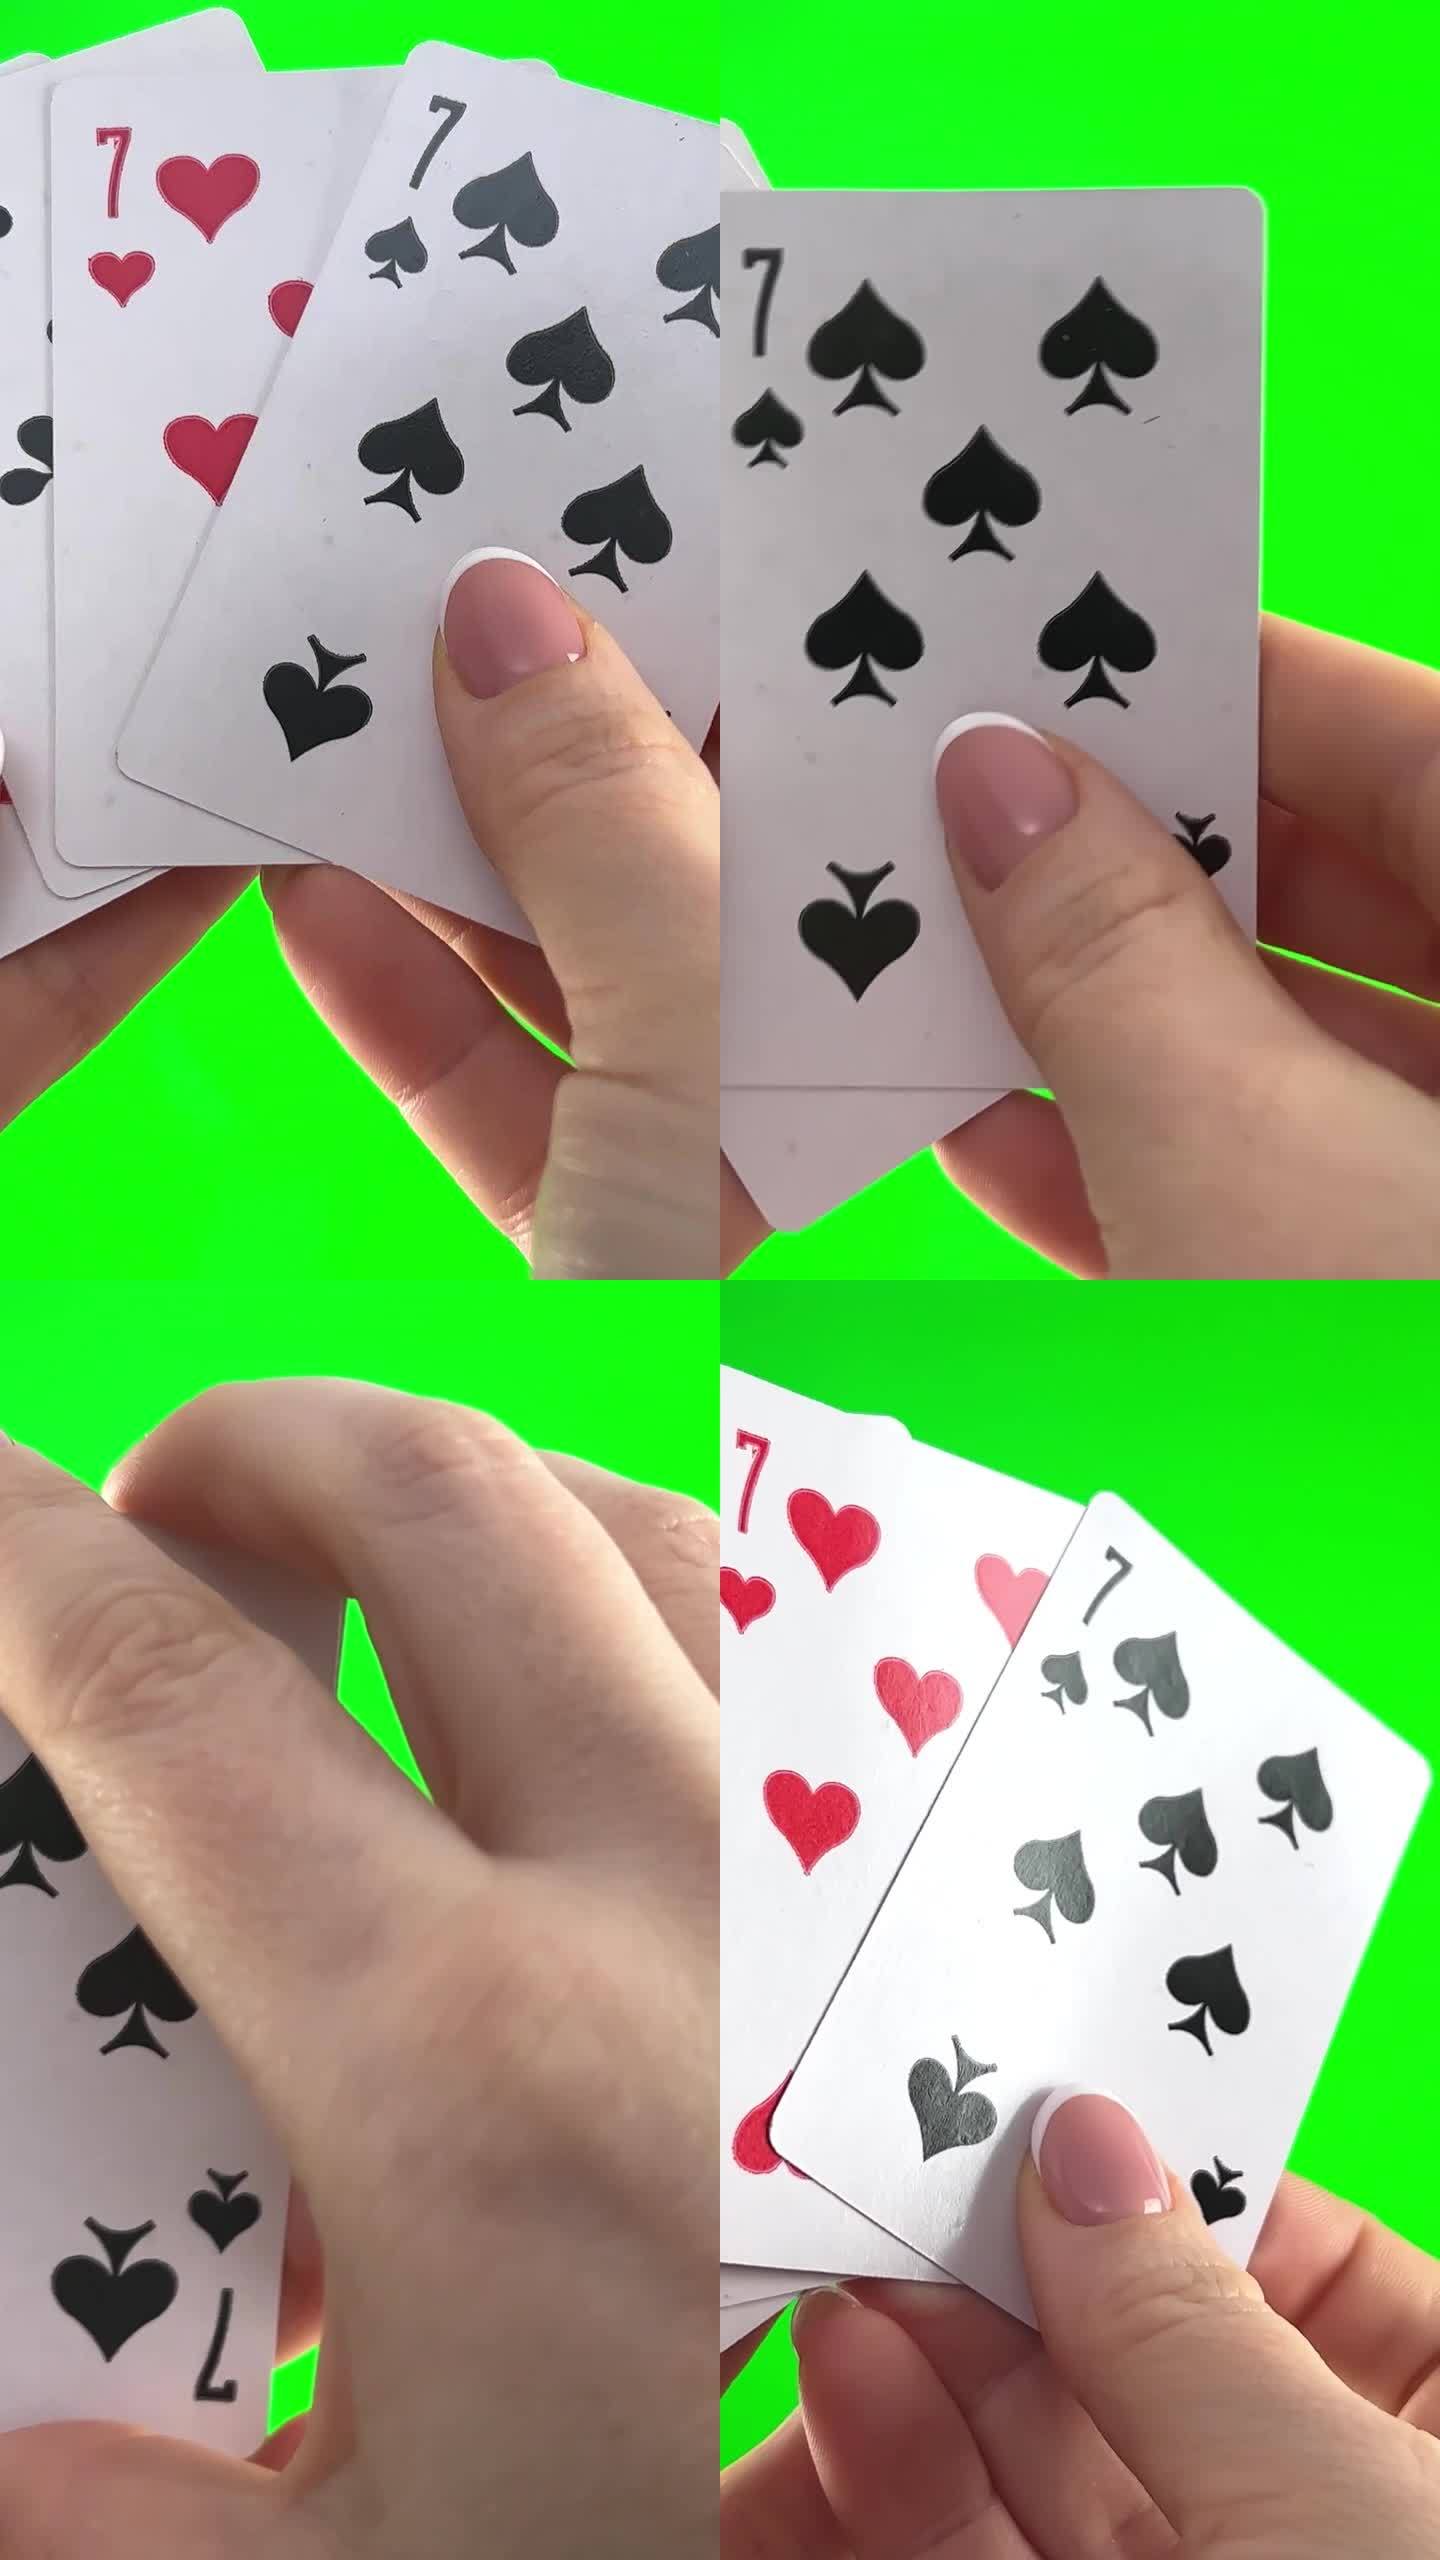 女性的手，法式美甲。女人整理卡片，检查它们，折叠起来，像扇子一样展开四张牌，同样的西装手拿着四张七，